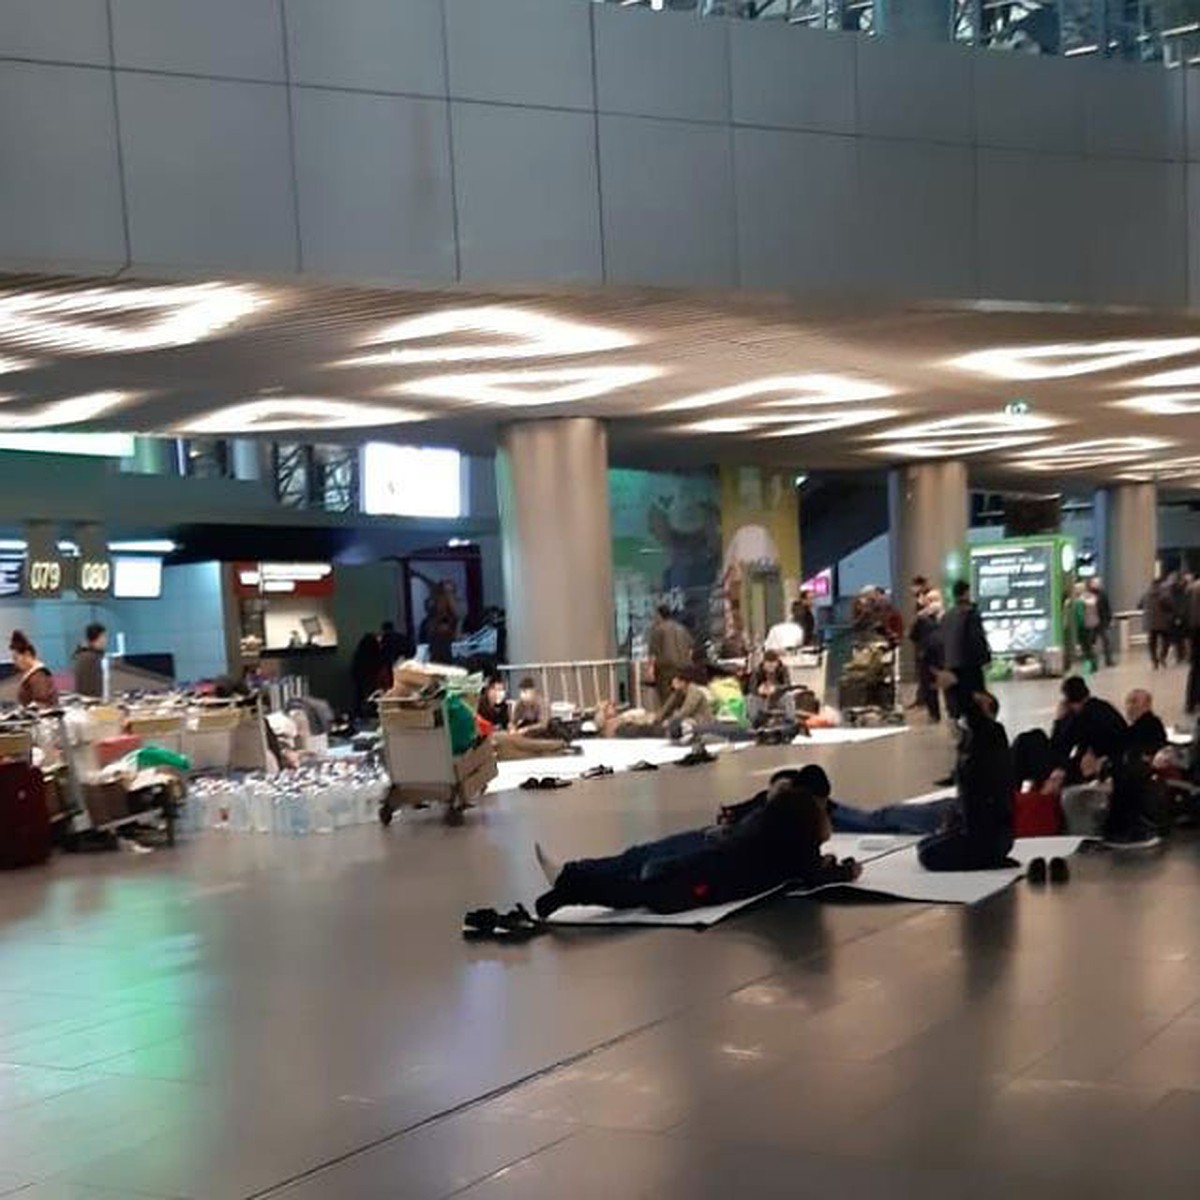 Что творится в аэропортах москвы сегодня. Мигранты в аэропортах Москвы. Очереди в аэропортах Москвы. Обстановка в аэропортах Москвы сейчас. Люди живущие в аэропорту.